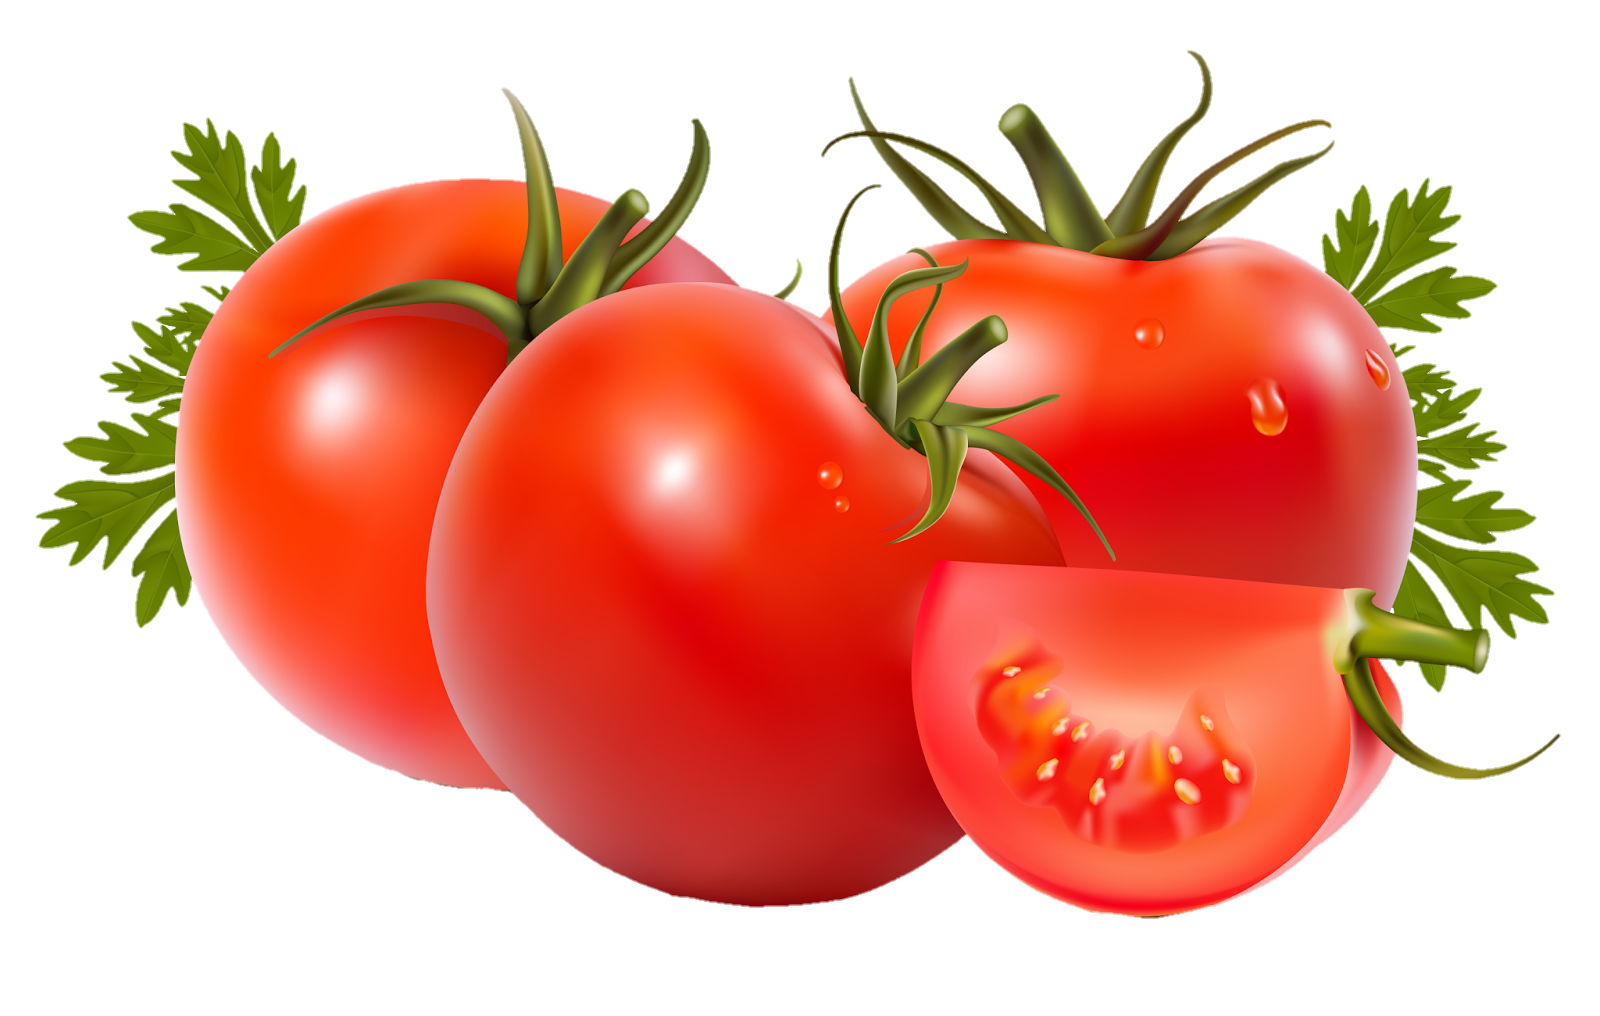 Tomato-17-1